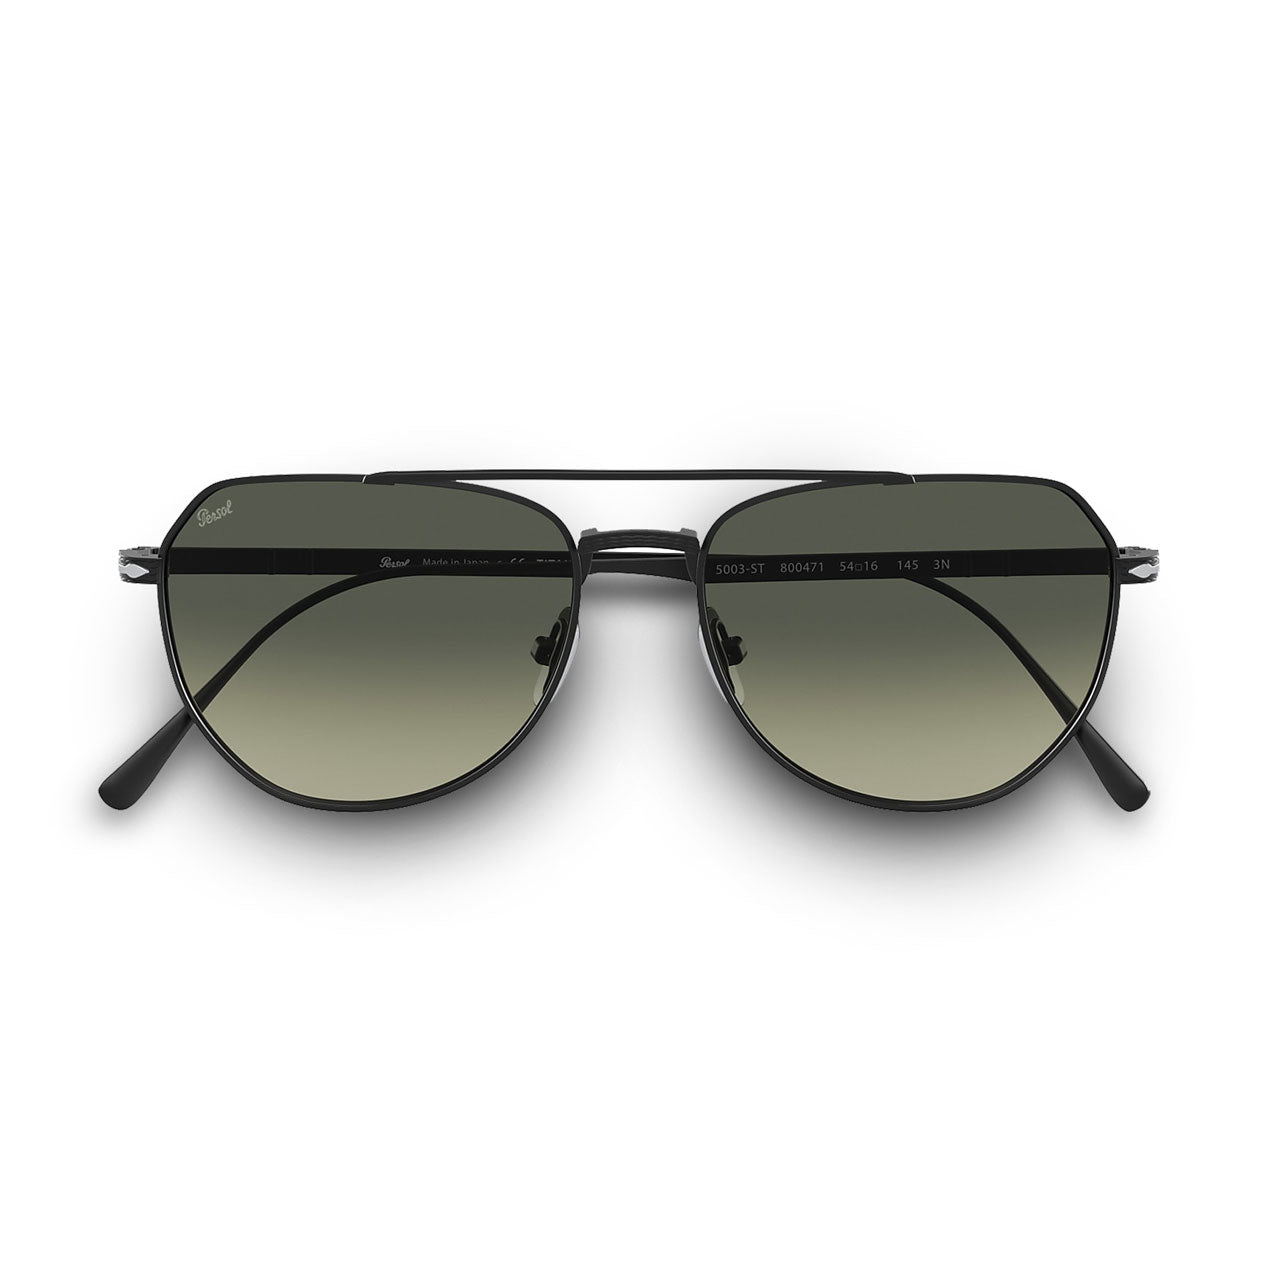 Persol Titanium Aviator Sunglasses